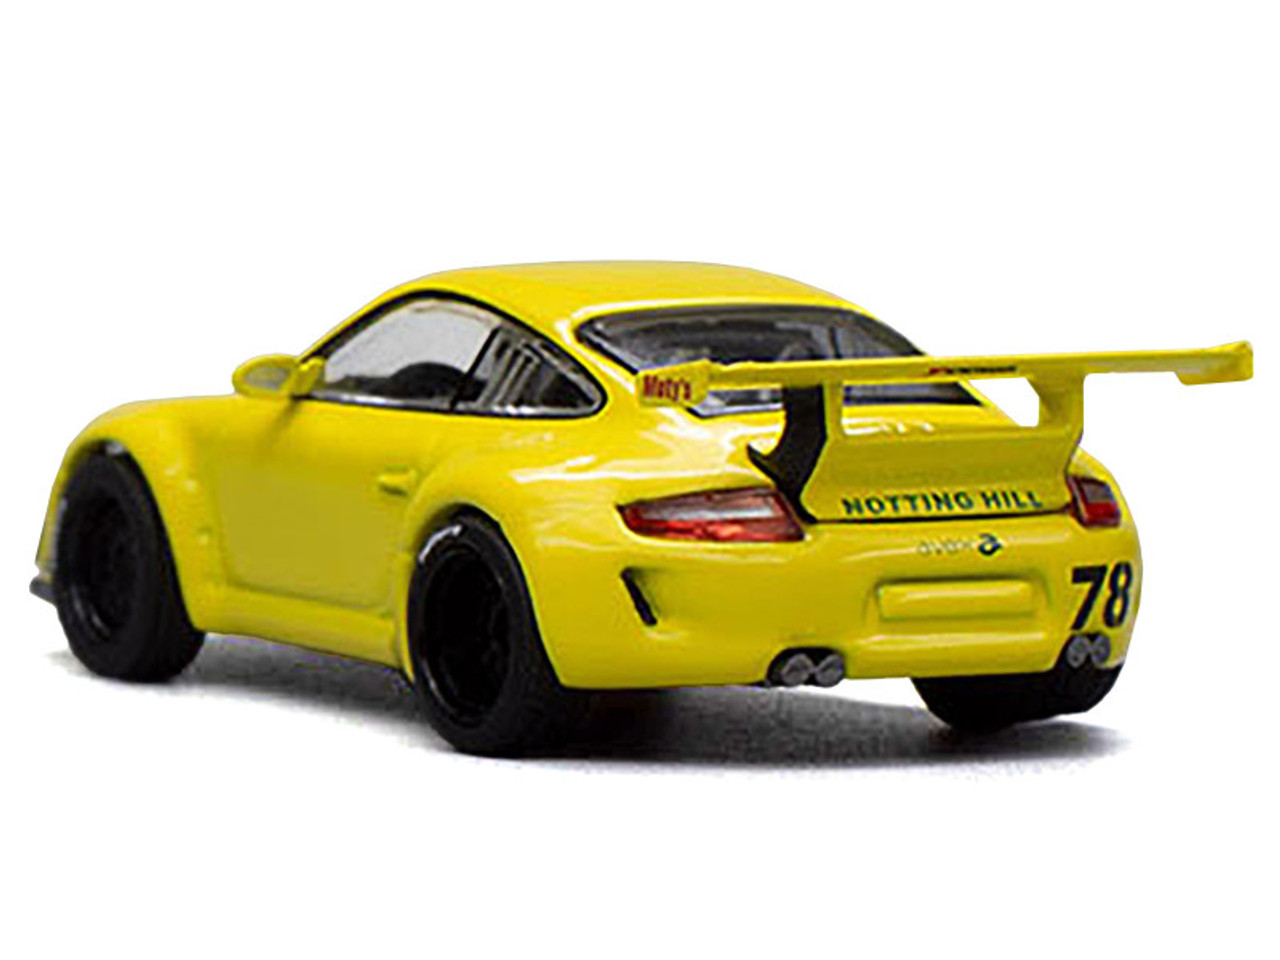 Porsche RWB 997 Yellow "Notting Hill" 1/64 Diecast Model Car by Pop Race